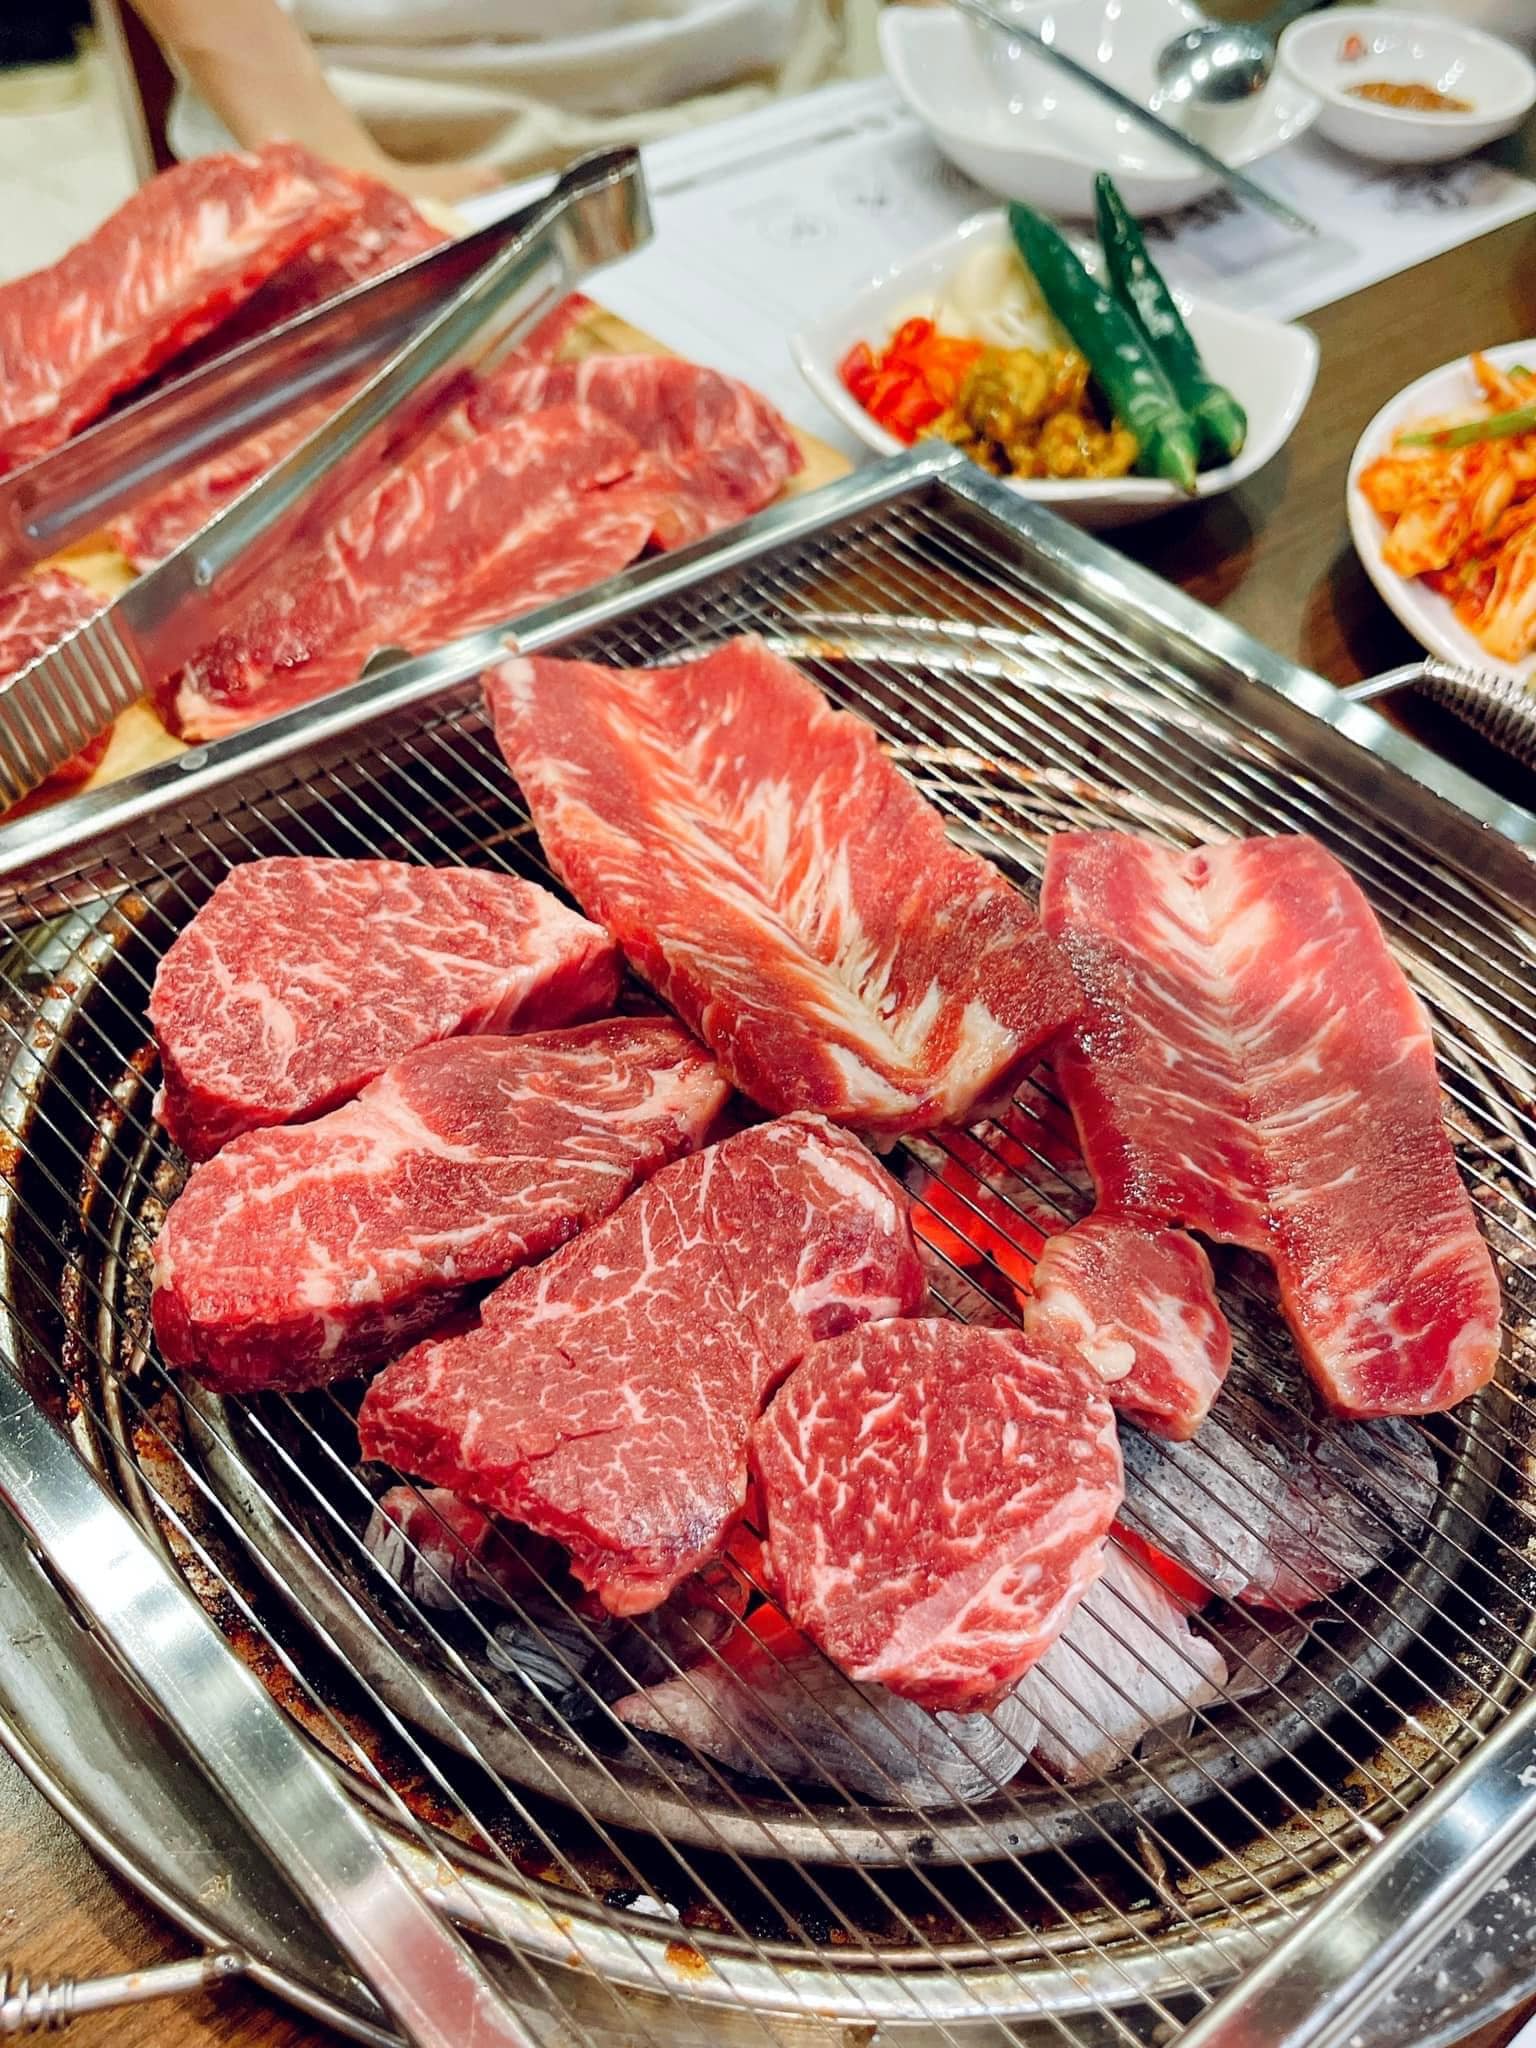 Thịt bò tảng thơm ngon khi được nướng lên, ăn cùng panchan ngon hết nước chấm.